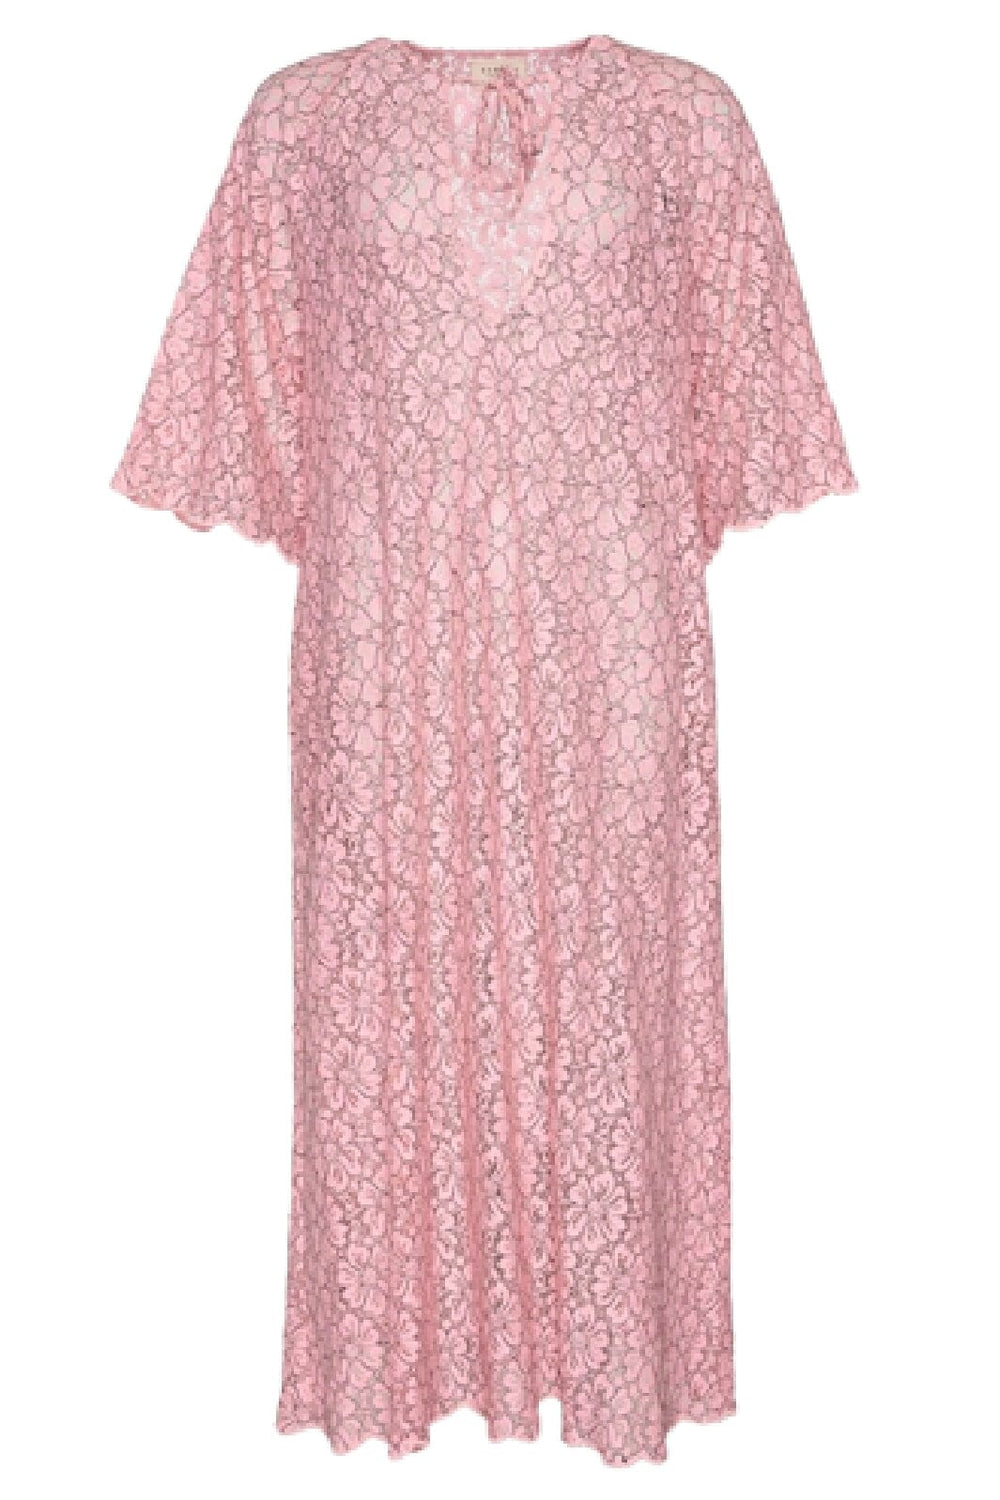 Forudbestilling - Sissel Edelbo - Lace Leftover Dress - Pink Kjoler 